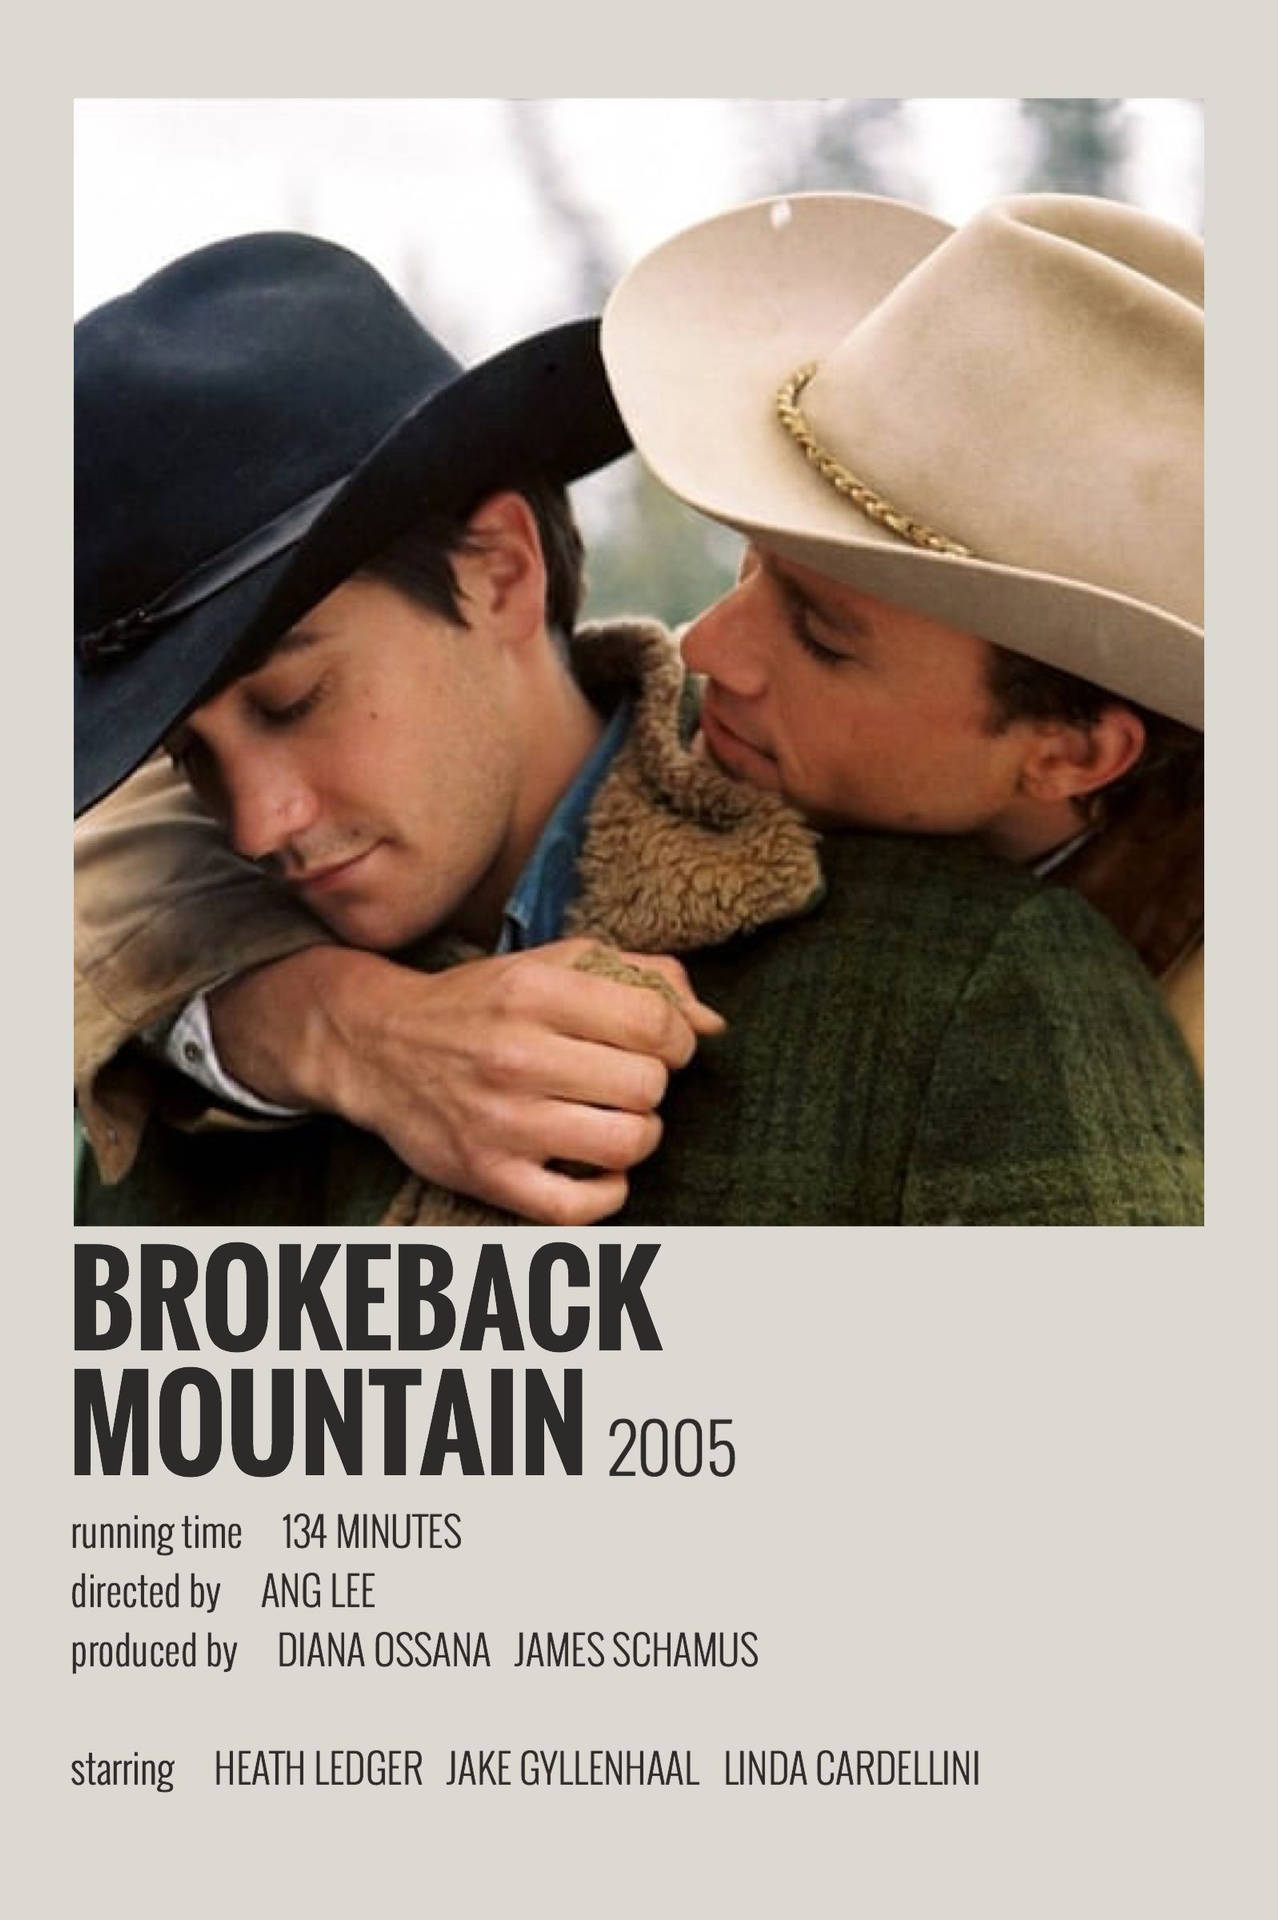 Brokeback Mountain Digital Poster Wallpaper